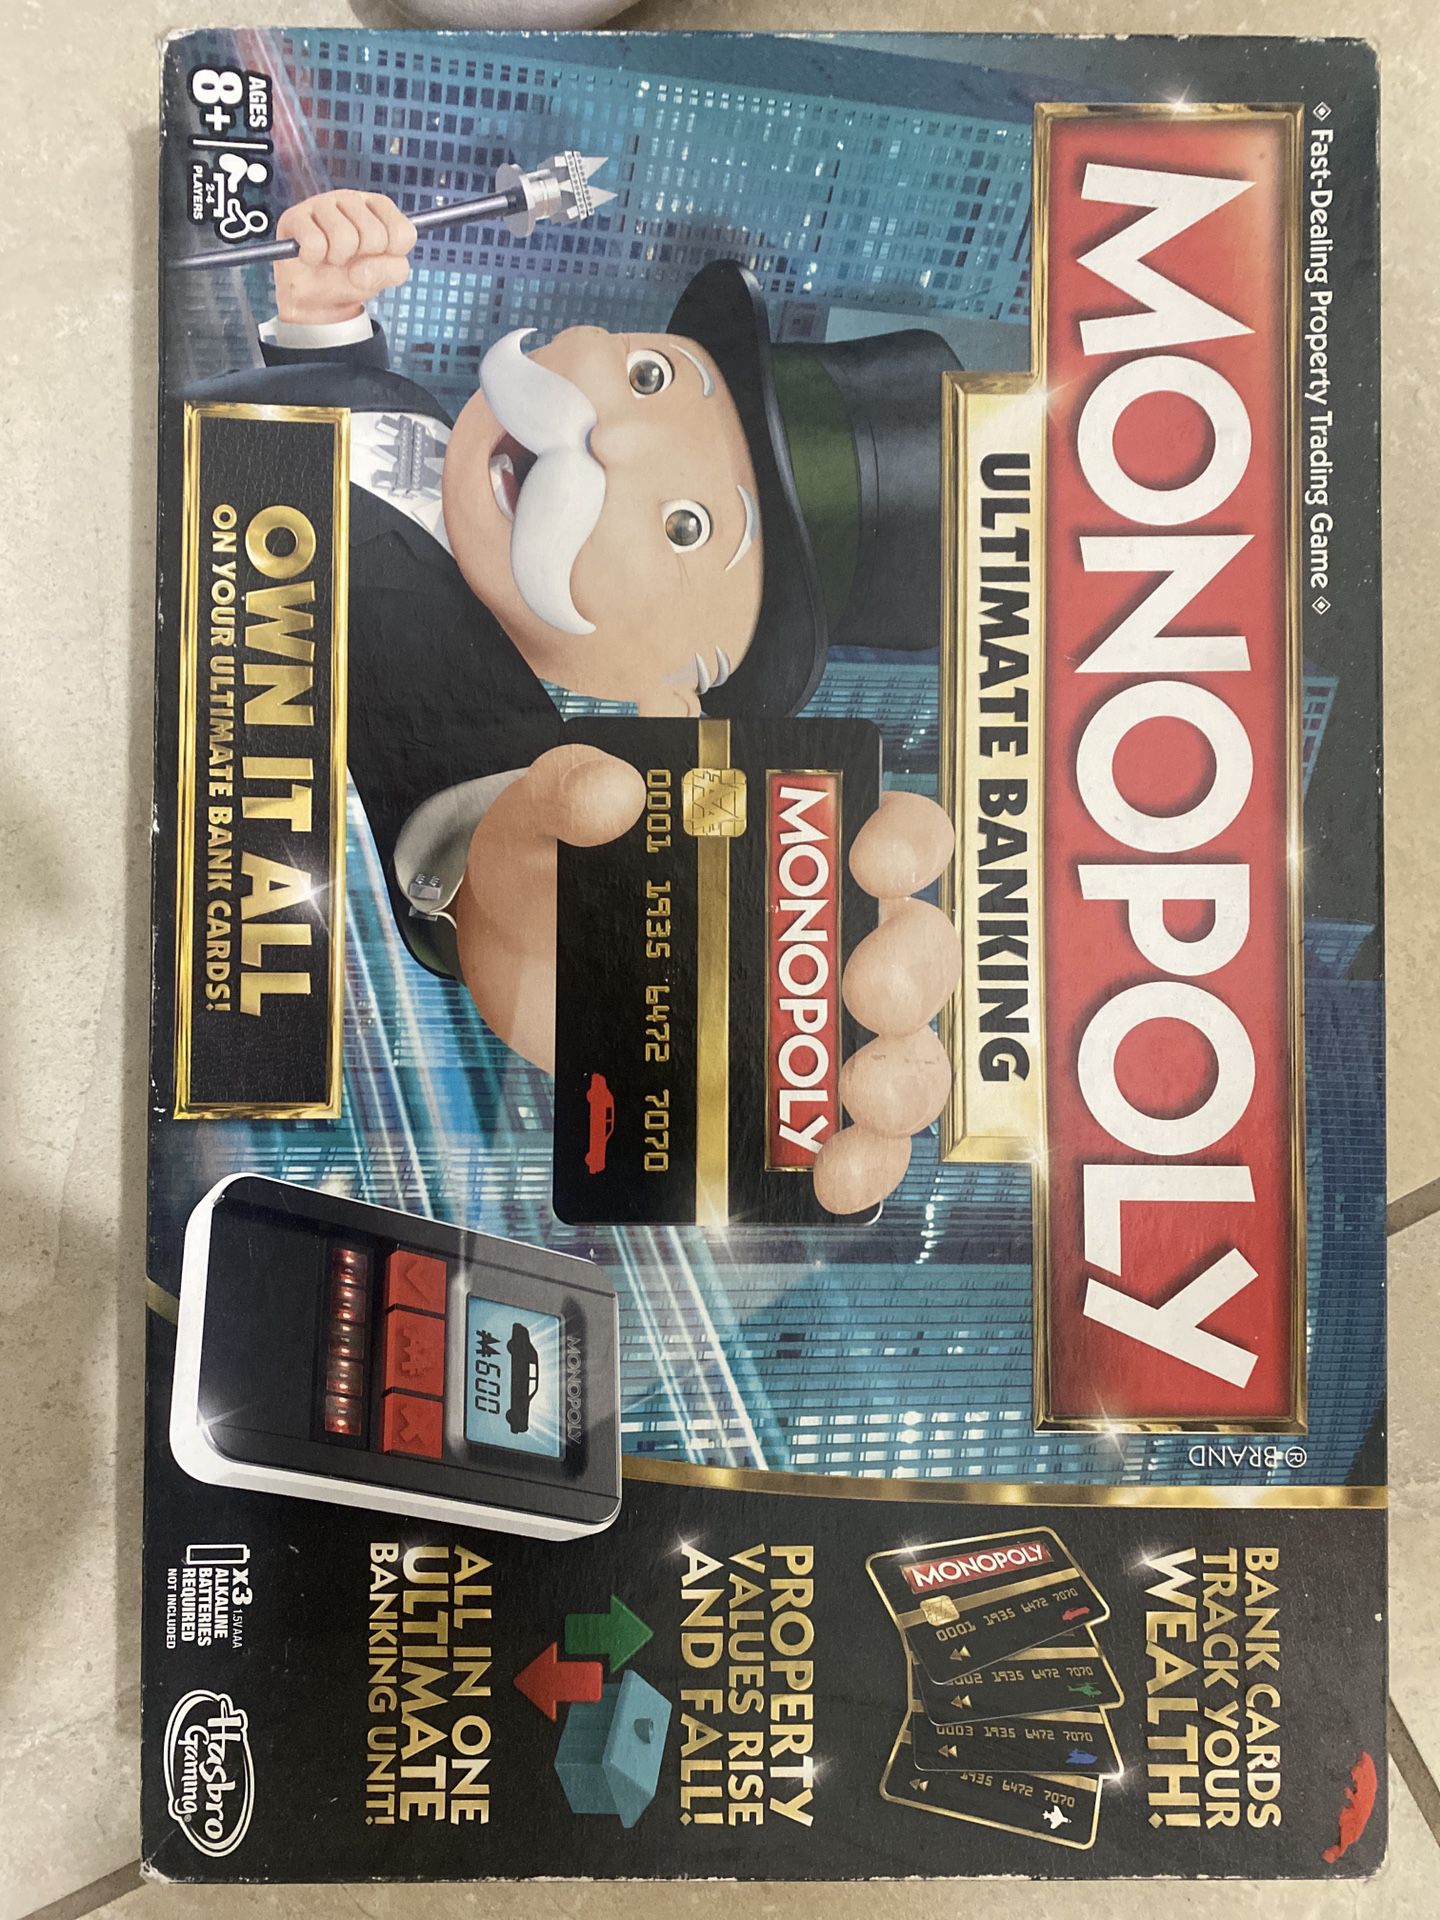 Hasbro Monopoly Ultimate Banking 